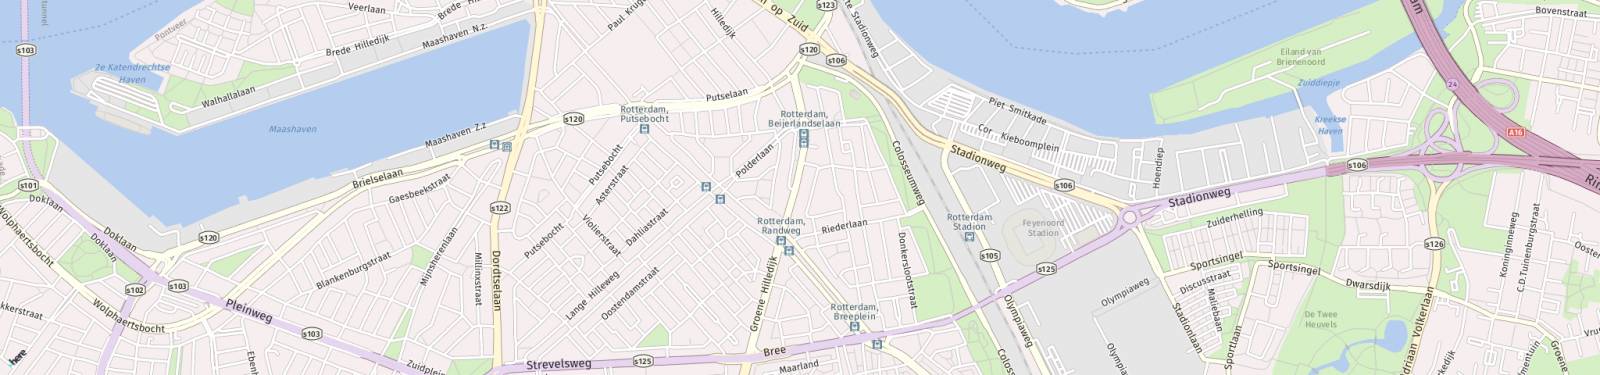 Kaart met locatie Appartement Beijerlandselaan